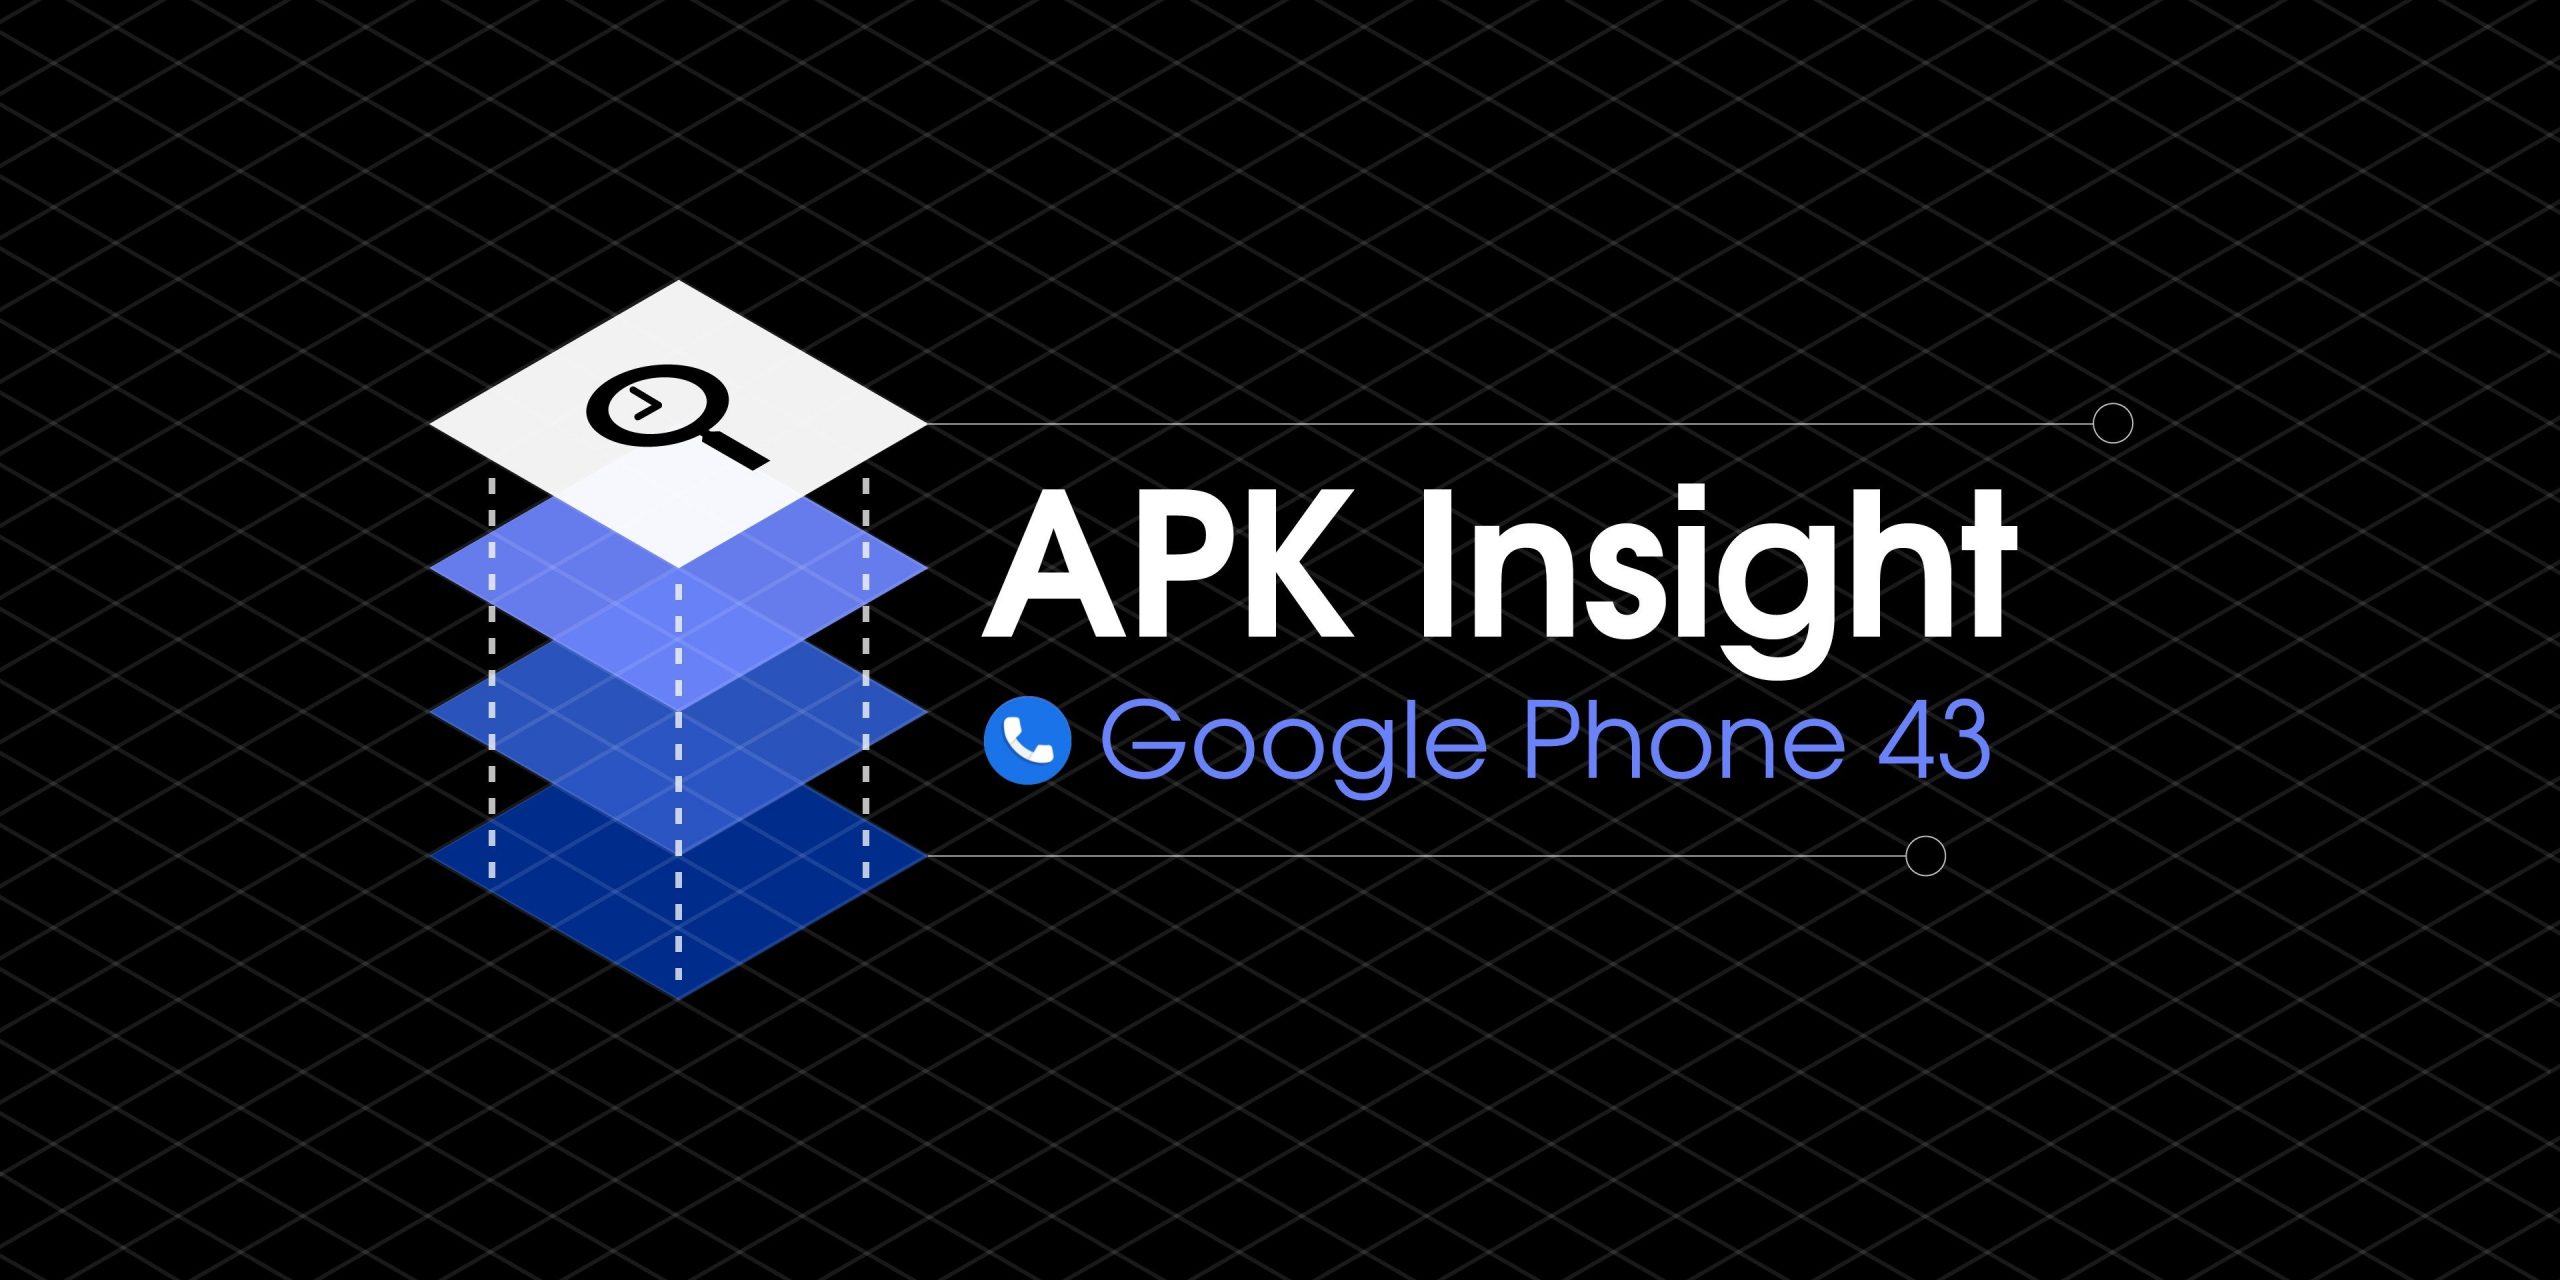 O Google Phone 43 prepara a capacidade de gravar chamadas telefônicas, salvar mensagens de voz [APK Insight]